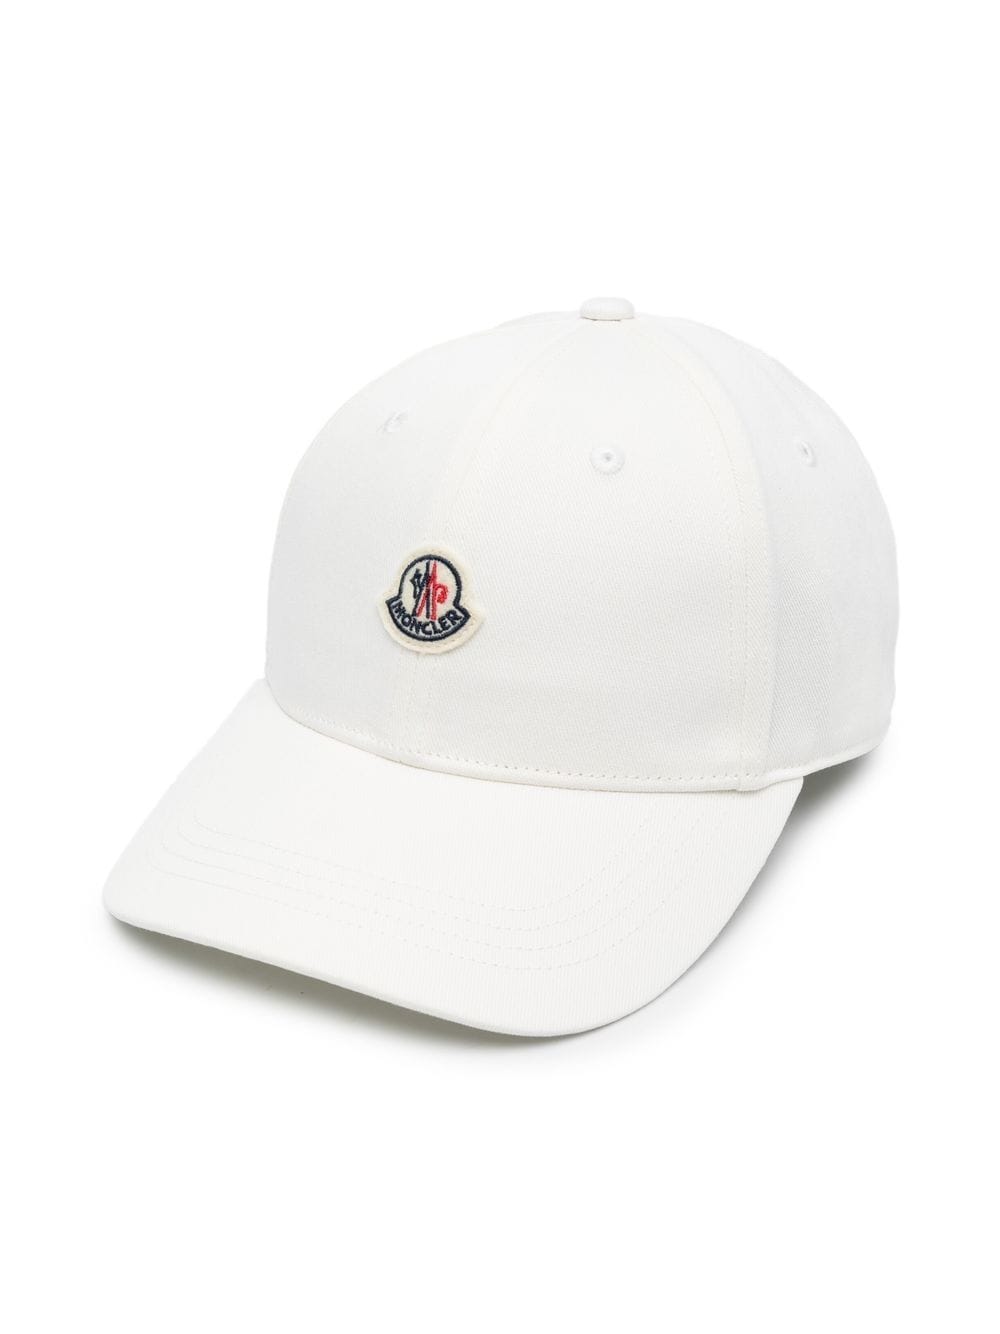 White children's hat with logo